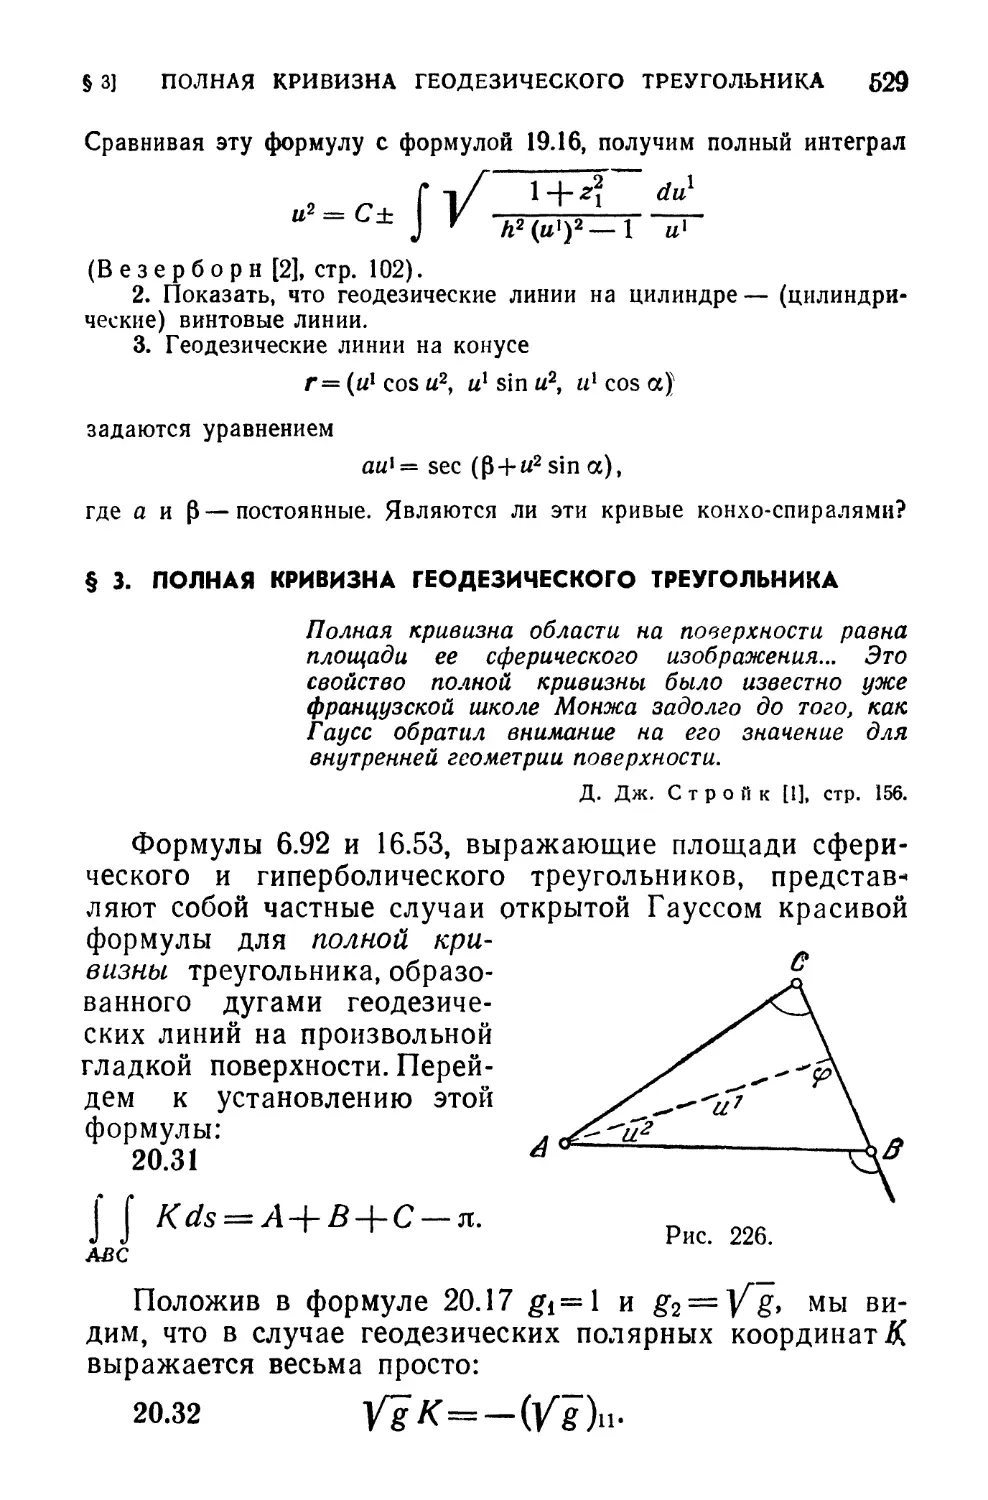 § 3. Полная кривизна геодезического треугольника